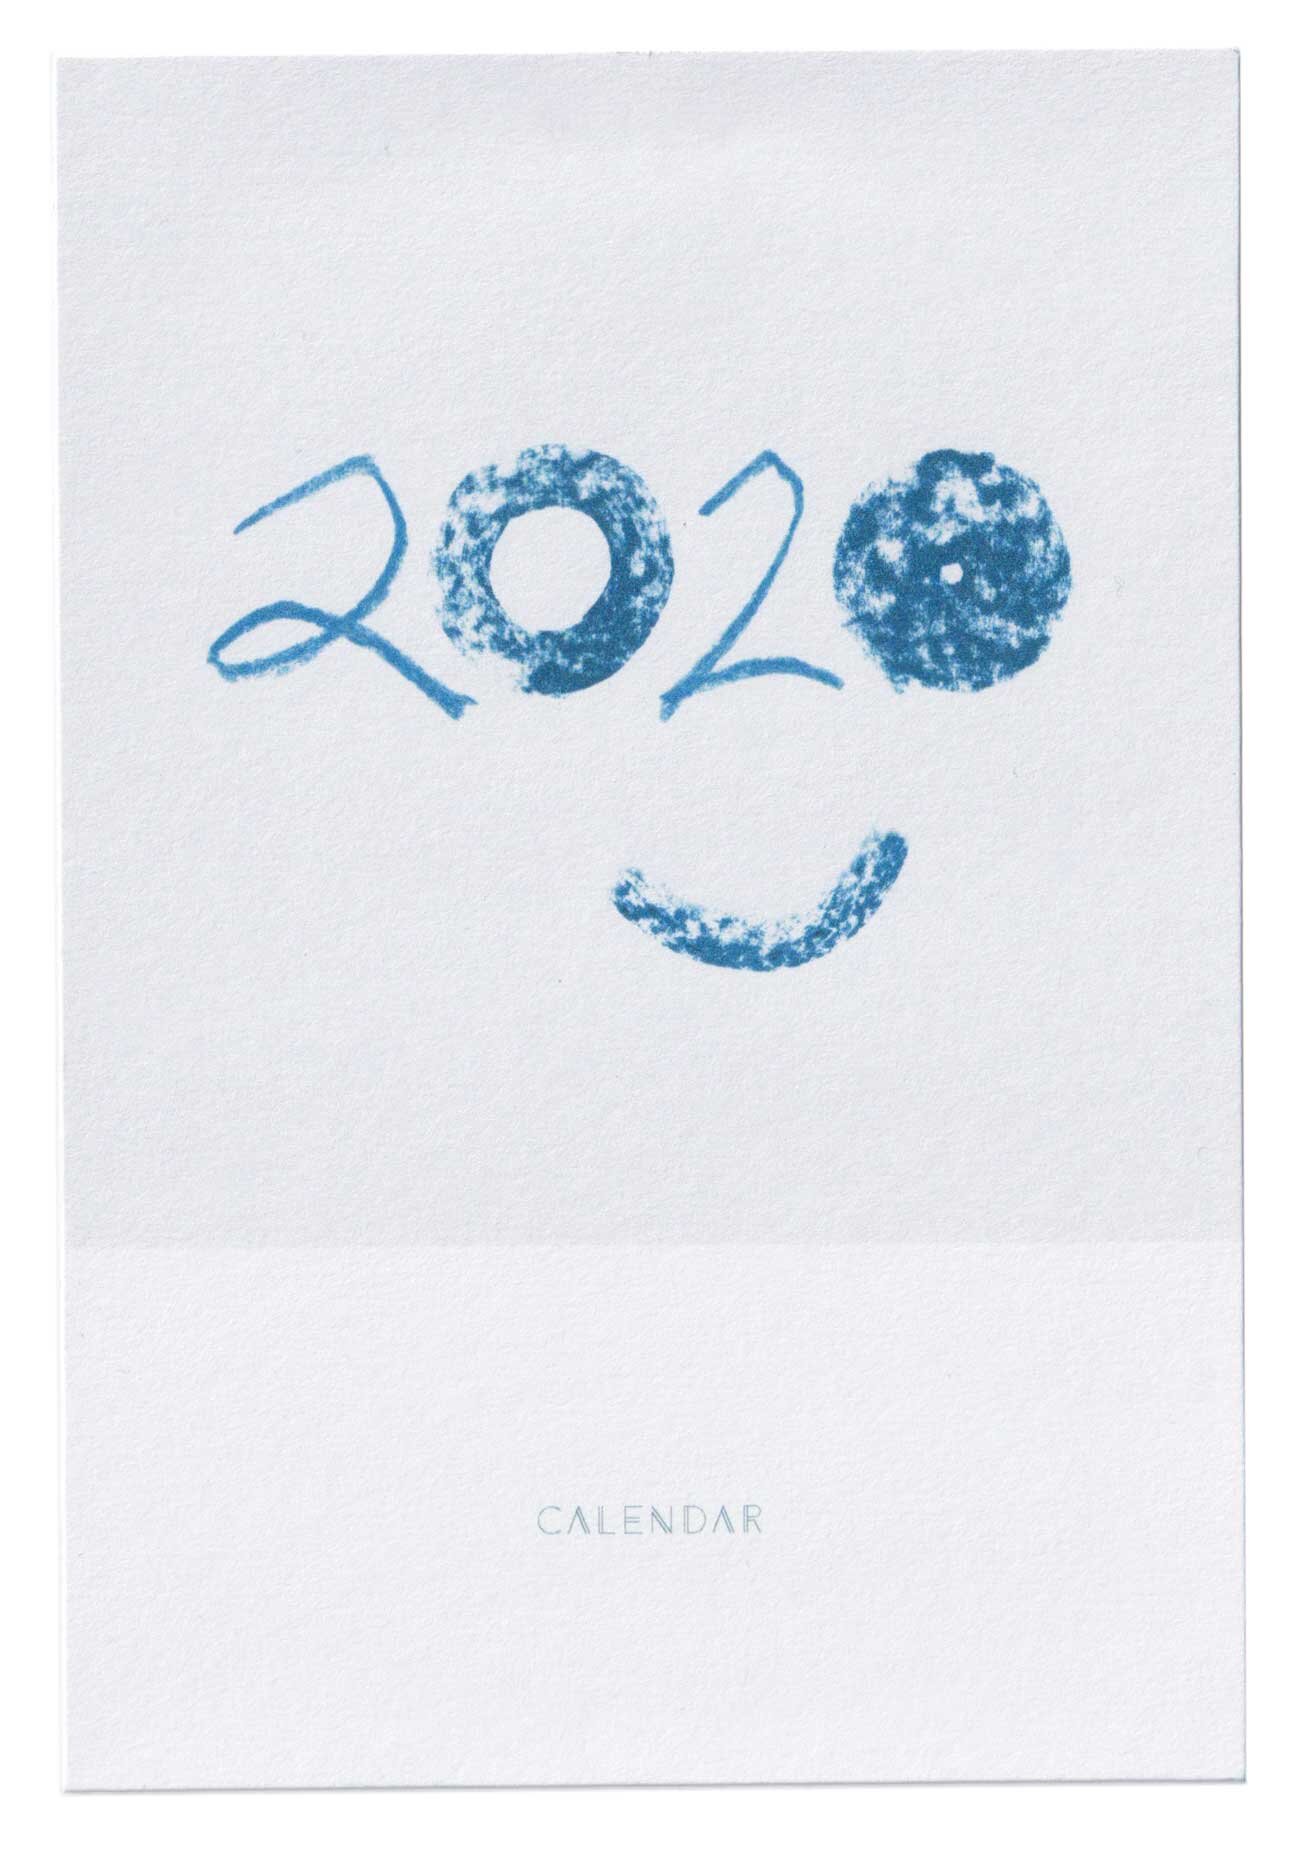 jessica_edmiston-calendar_2020-cover.jpg